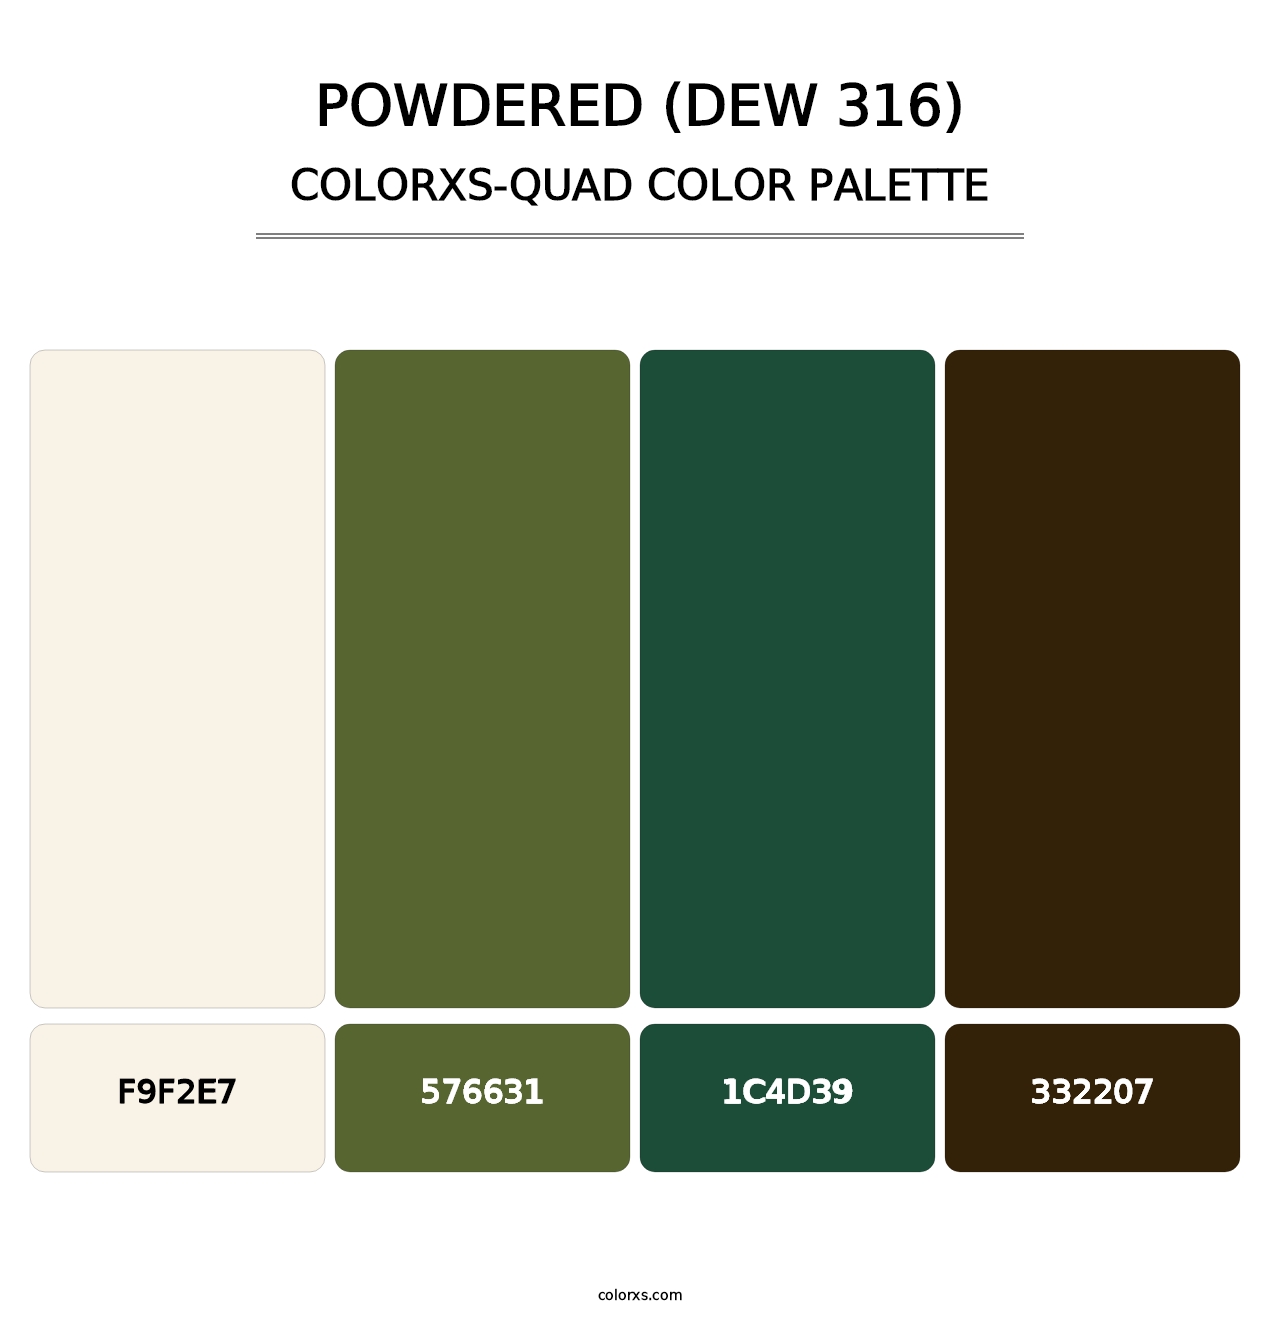 Powdered (DEW 316) - Colorxs Quad Palette